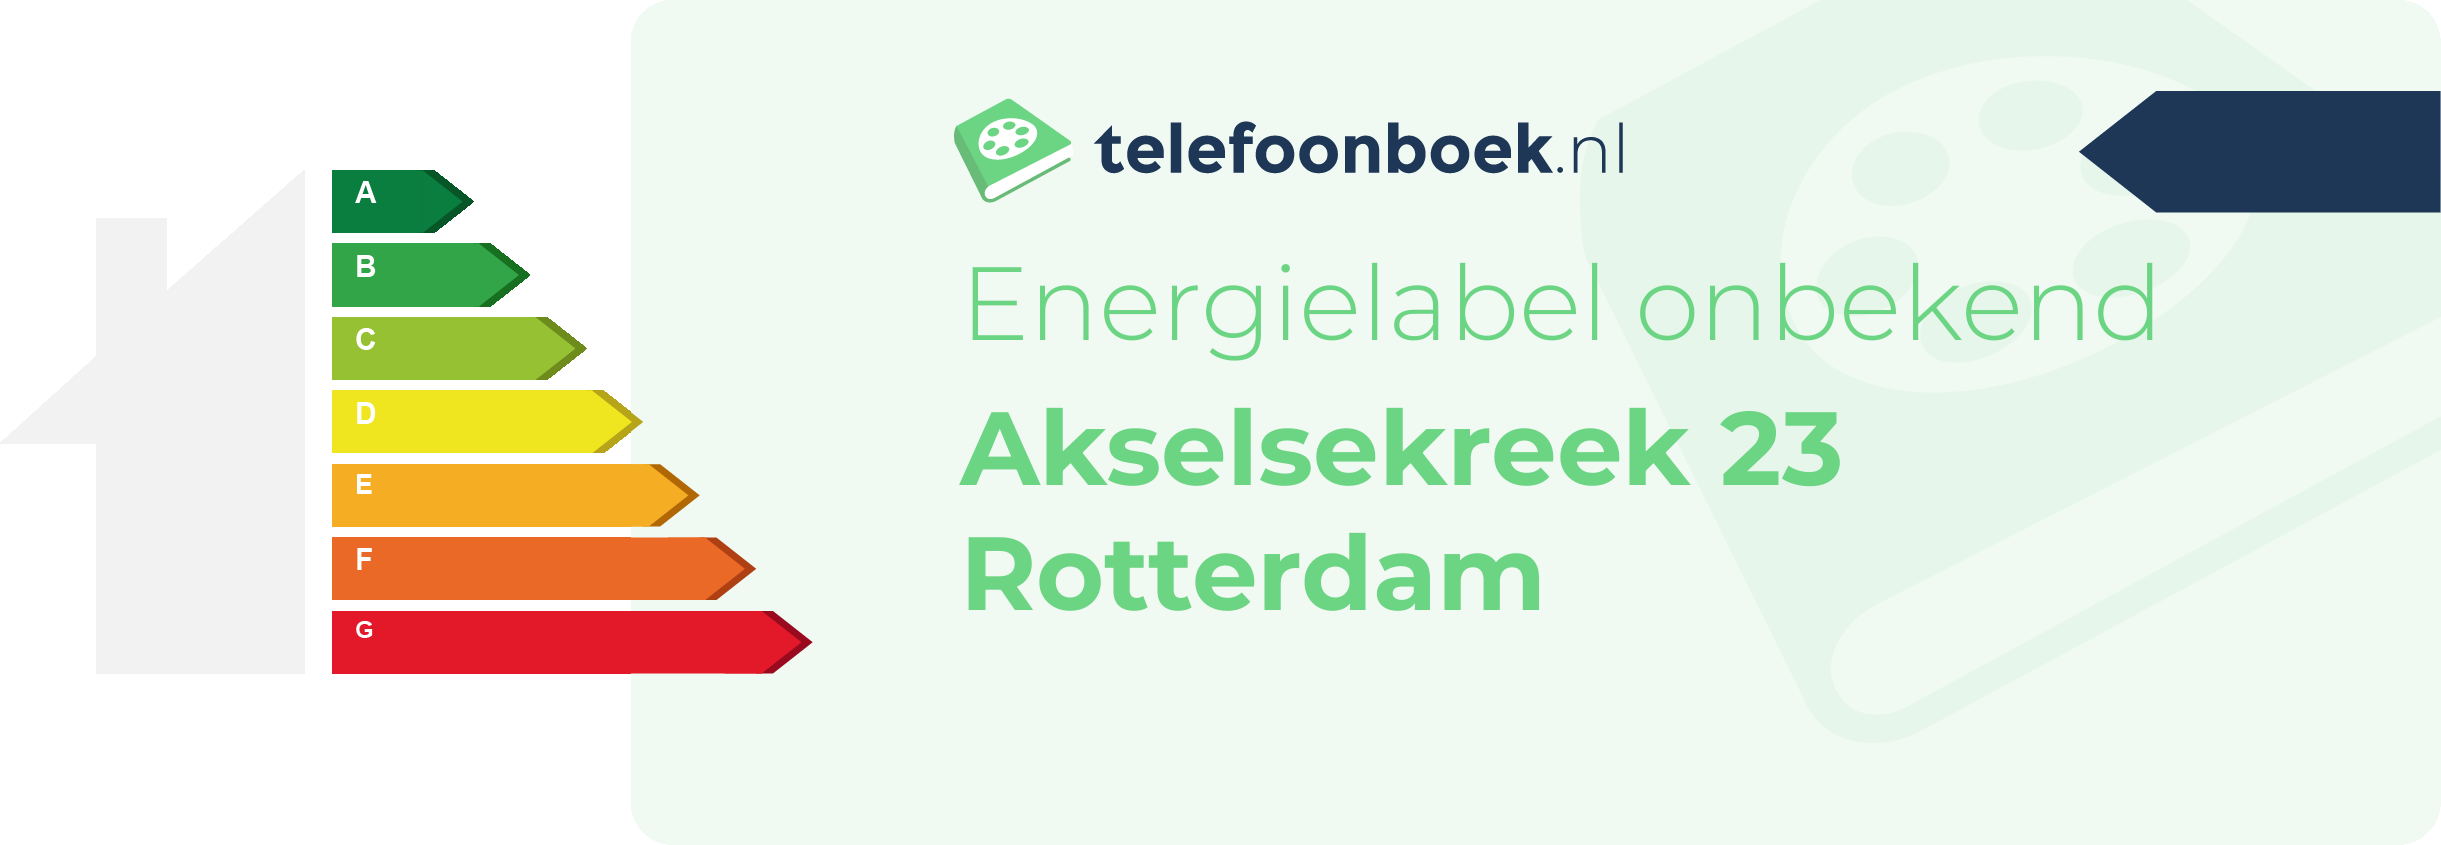 Energielabel Akselsekreek 23 Rotterdam